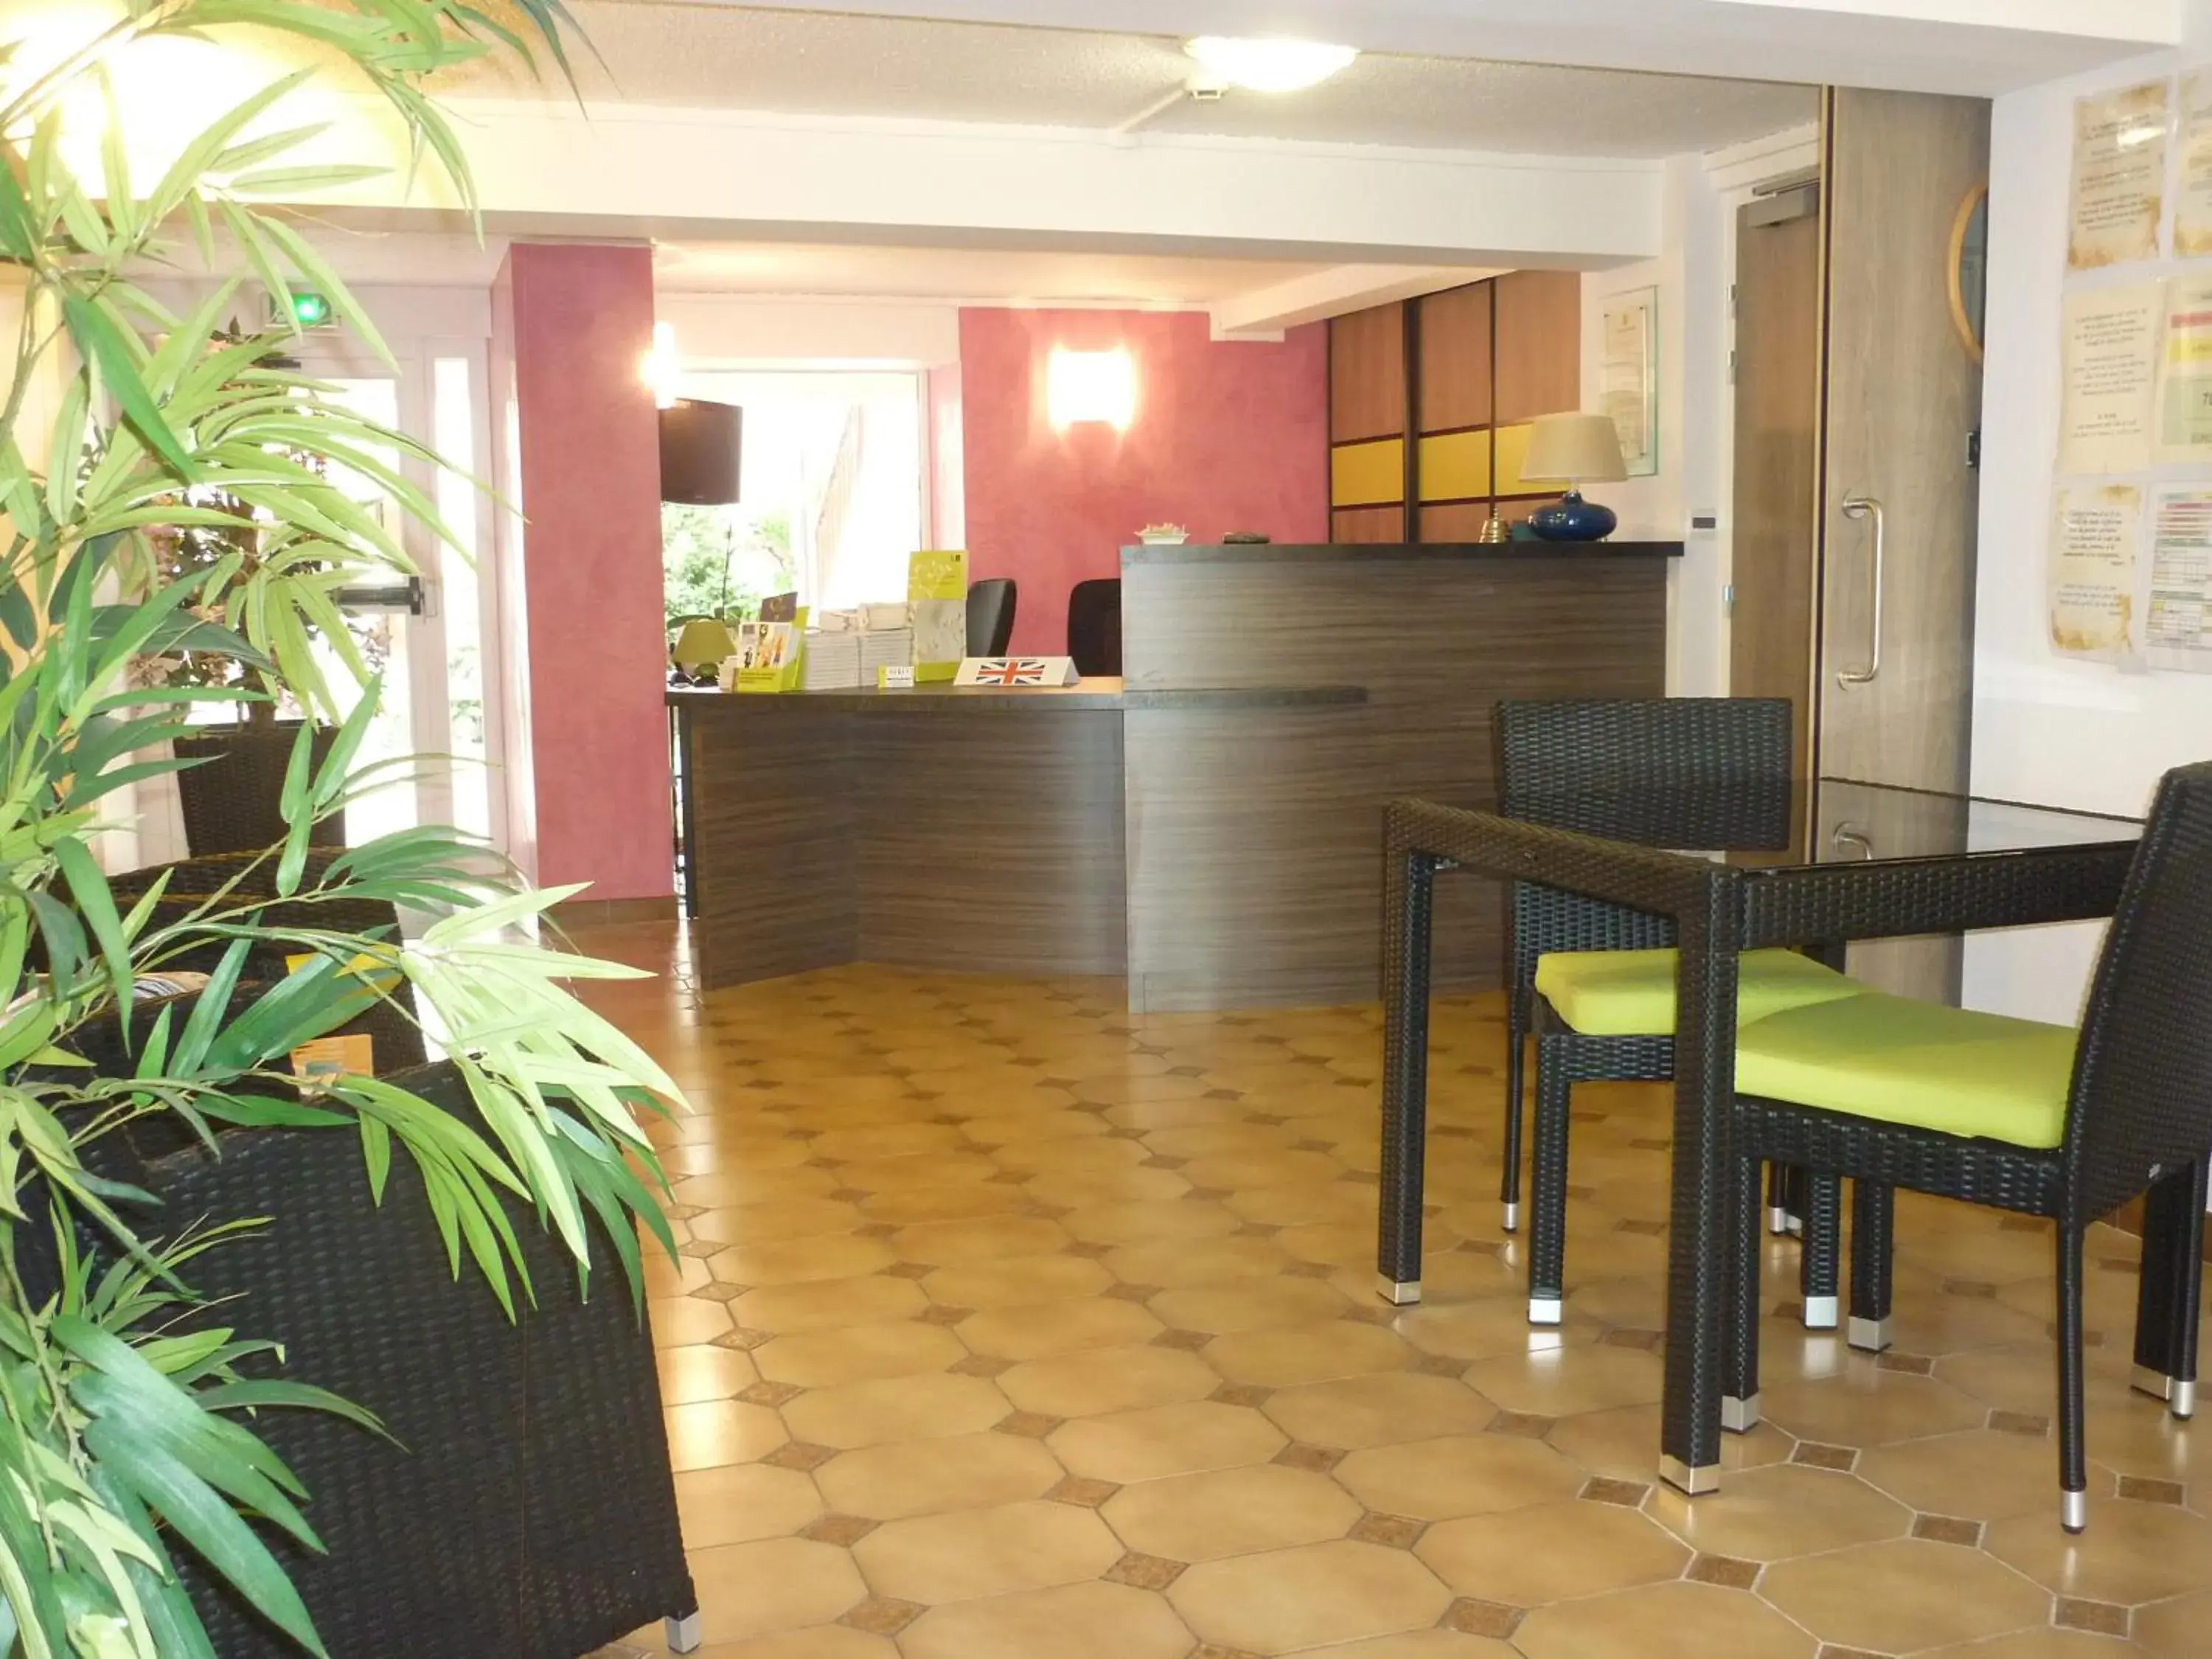 Lobby or reception, Lobby/Reception in Logis Aurea Hotel